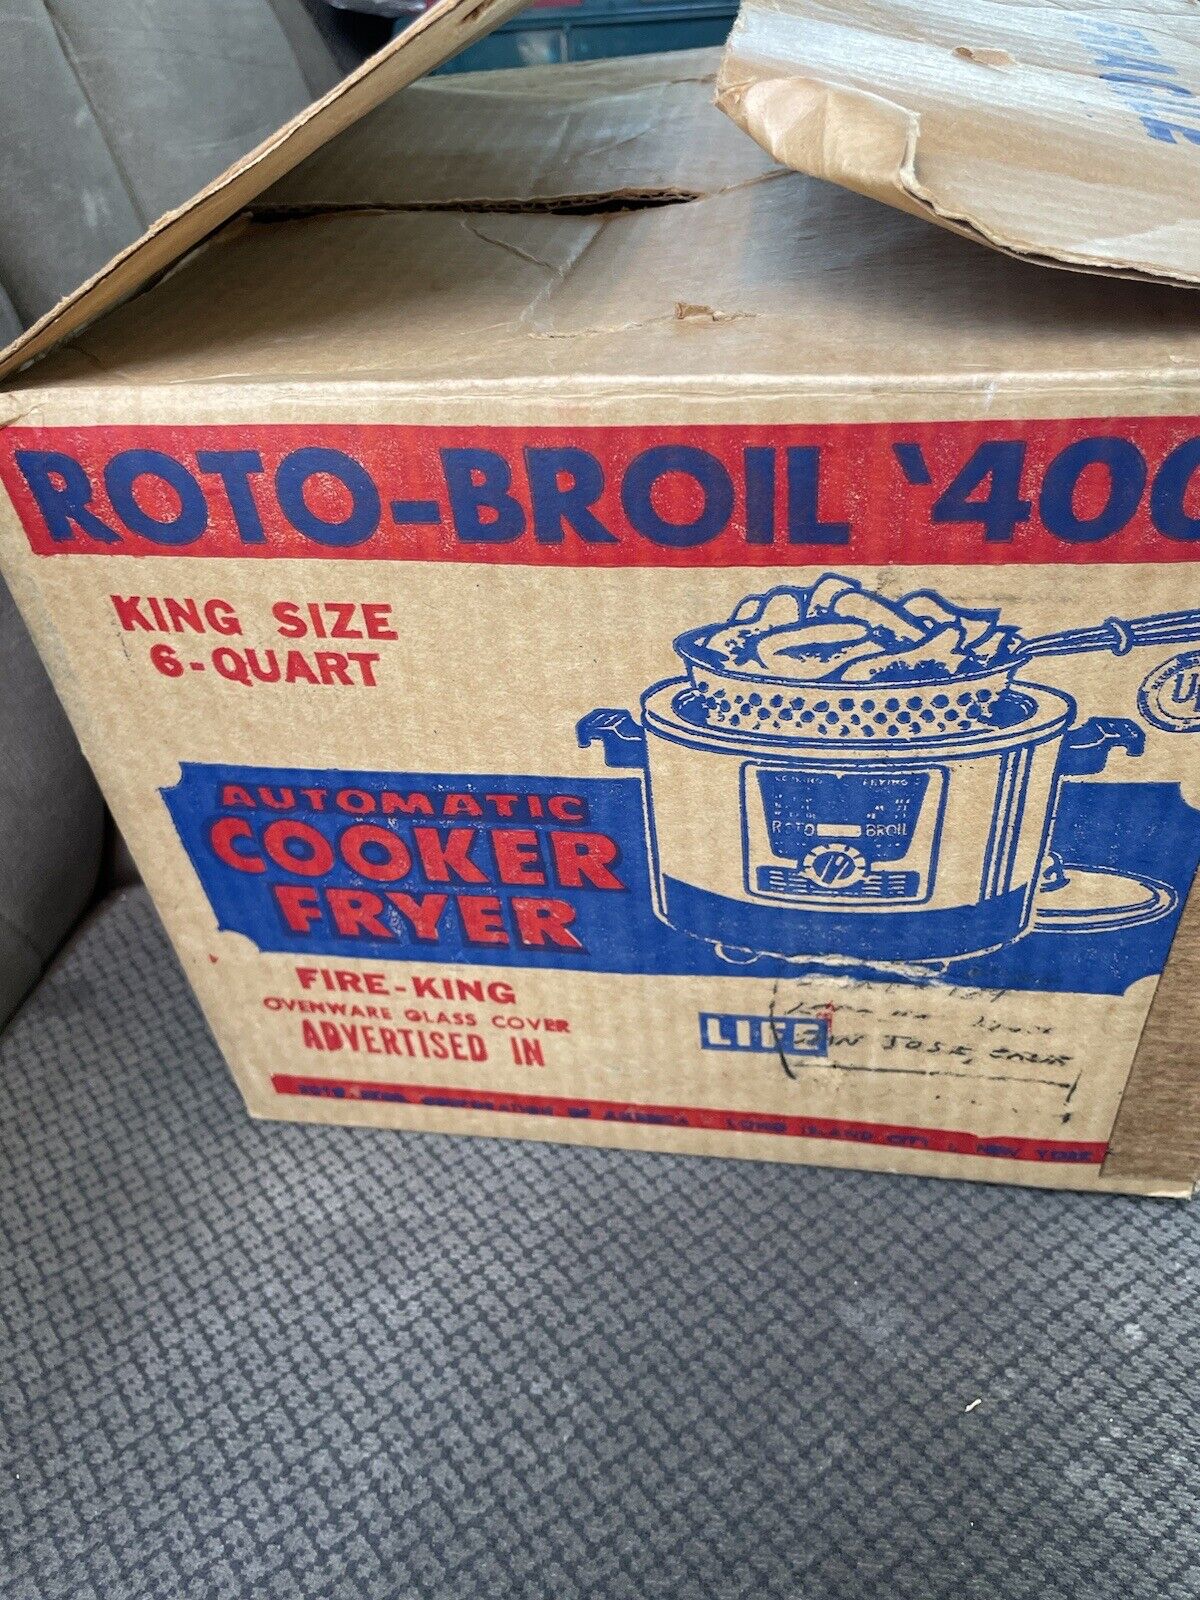 Vintage ROTO-BROIL 400 AUTOMATIC COOKER FRYER 6 Quart